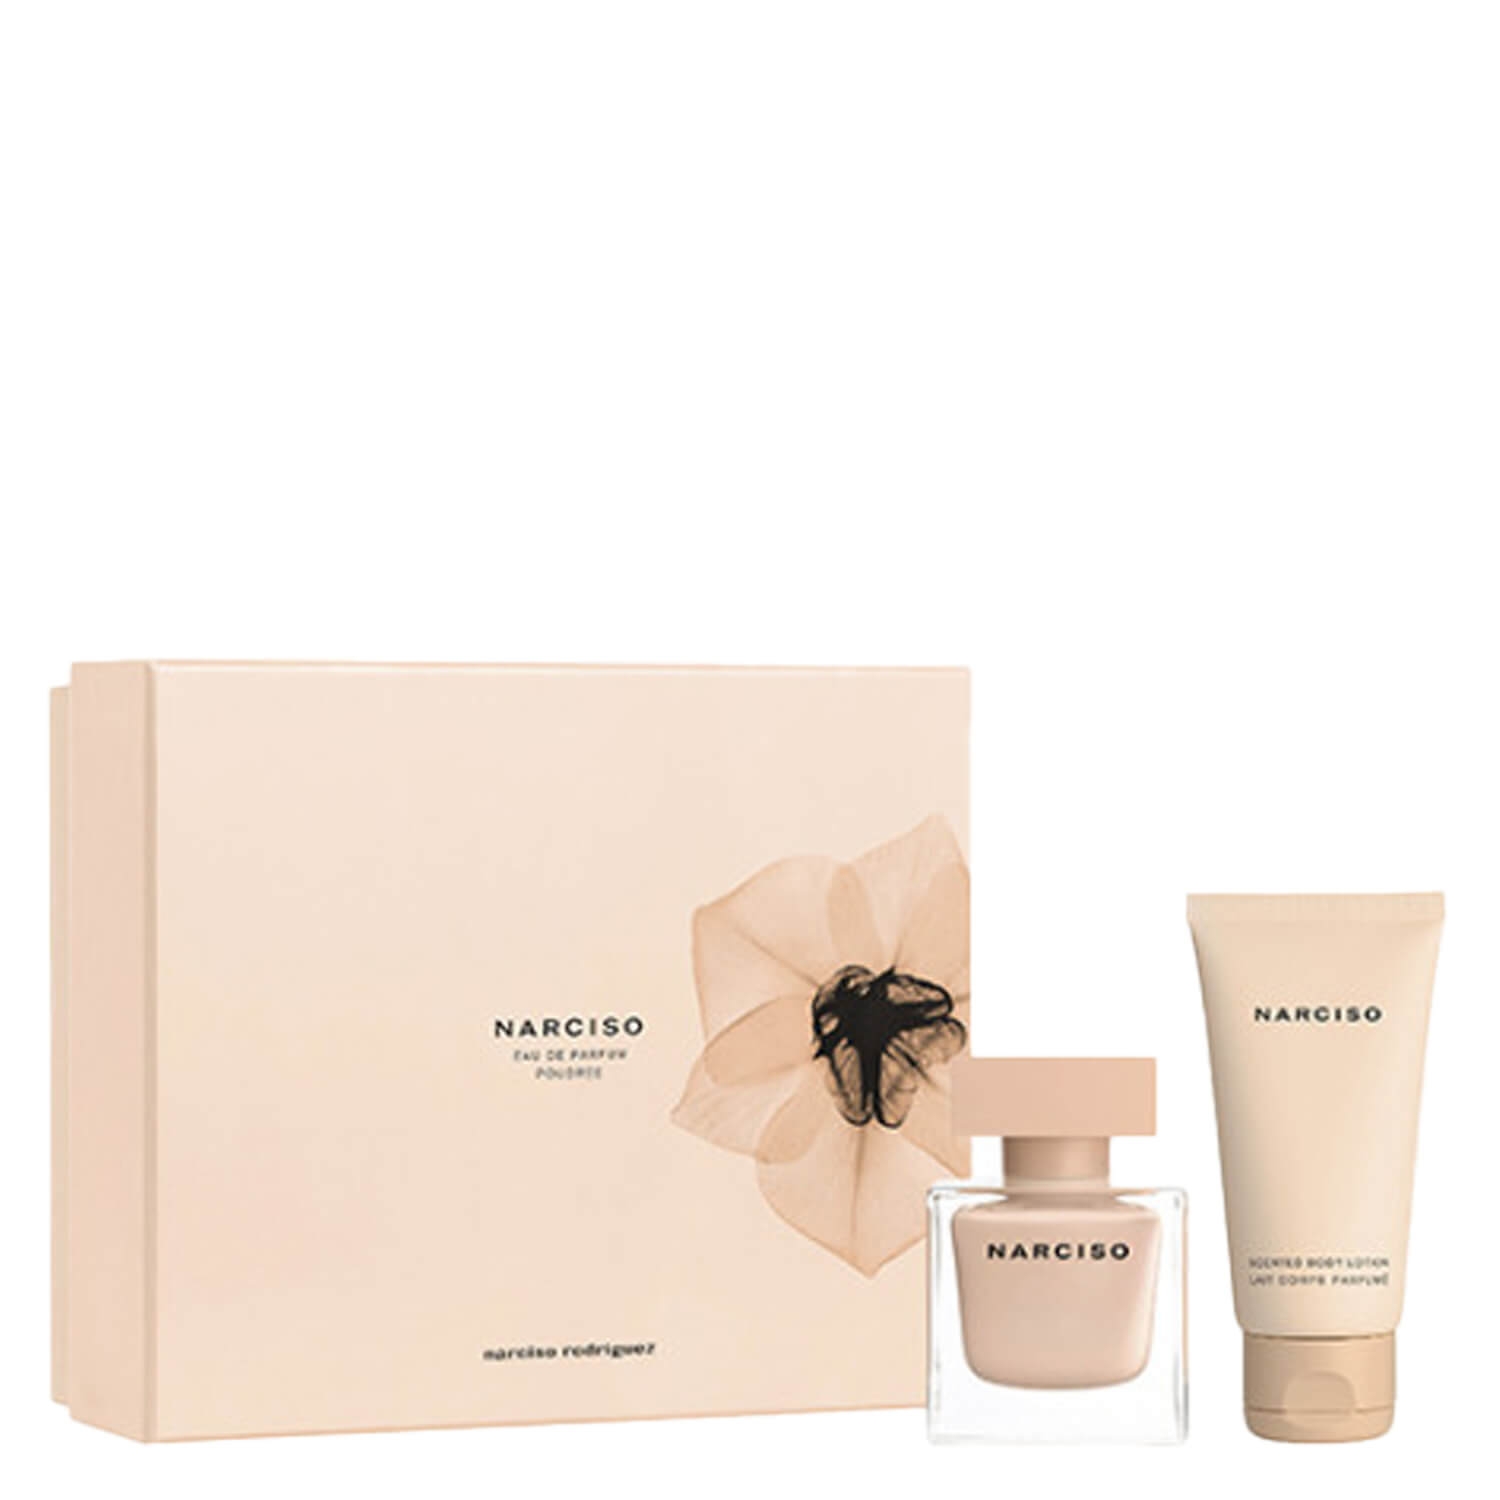 Product image from Narciso – Eau de Parfum Poudrée Set